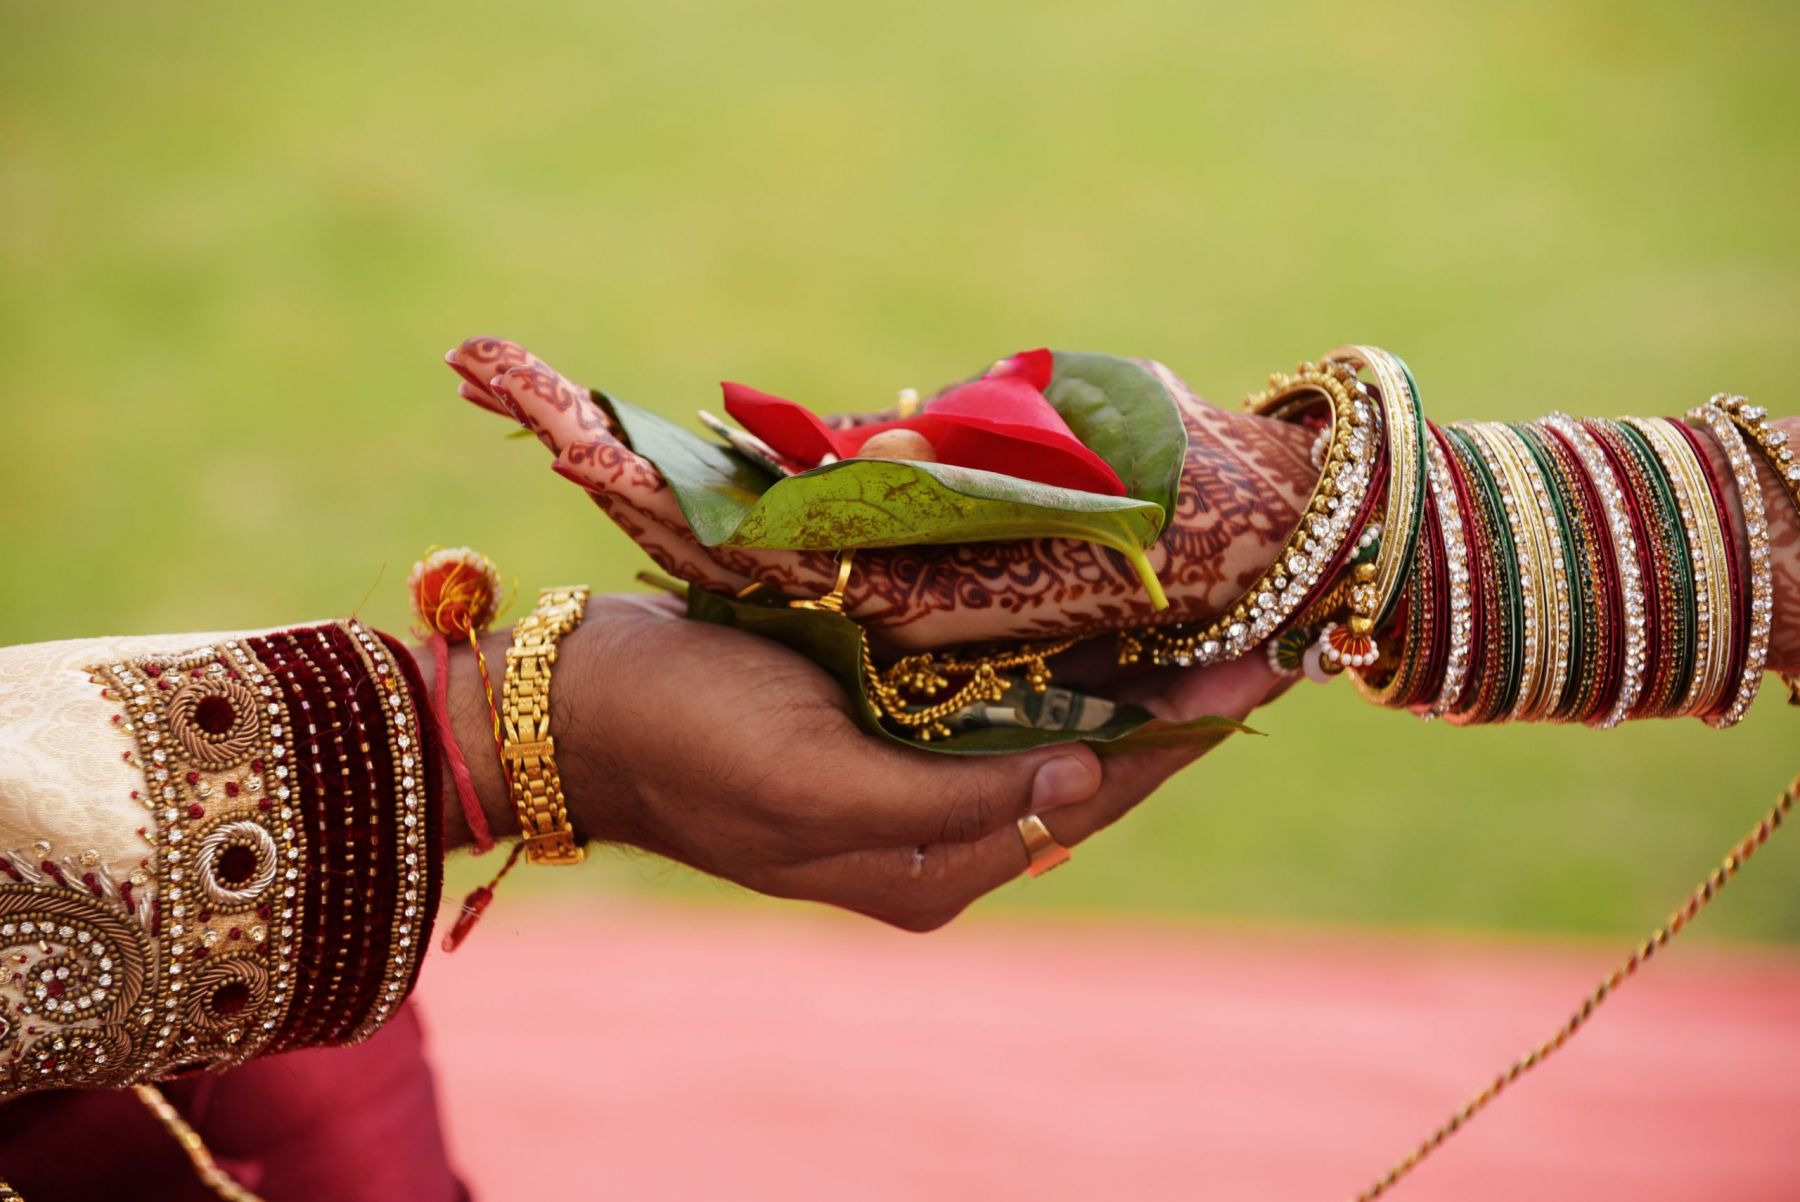 Γάμος – Ινδία: Πέθανε η νύφη και την αντικατέστησαν με την αδερφή της